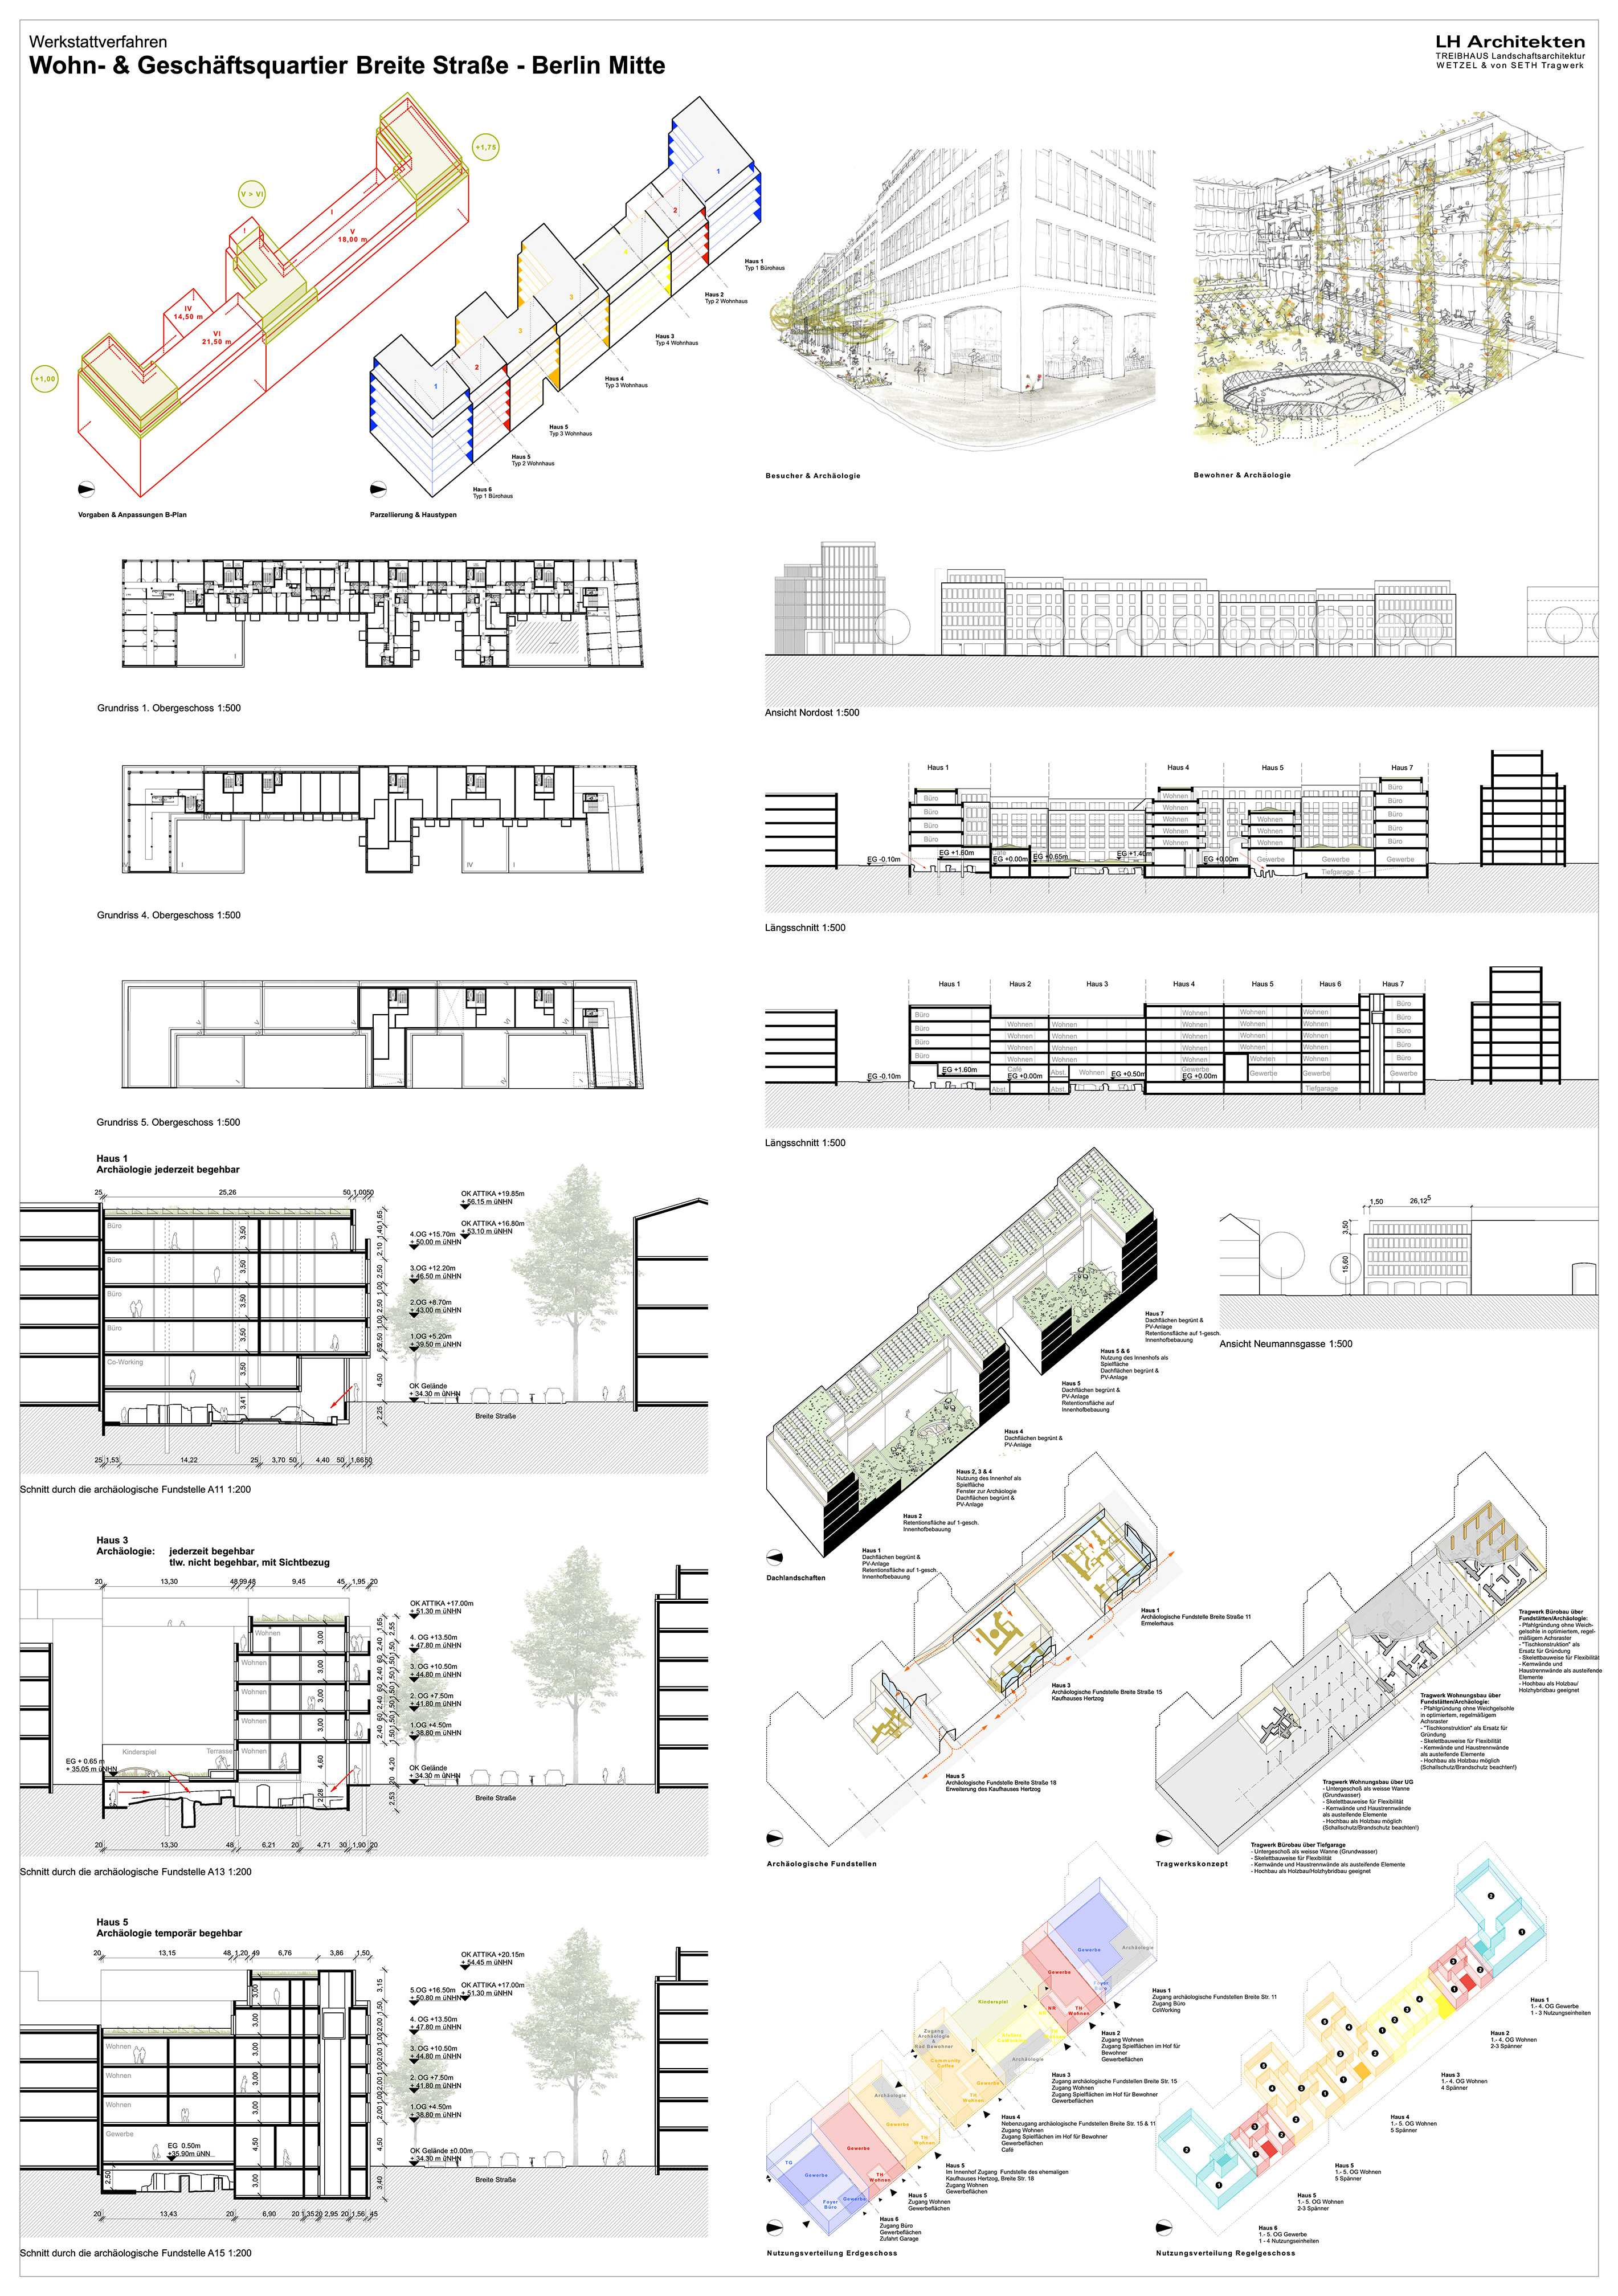 Planungsteam LH Architekten Plan 2/2